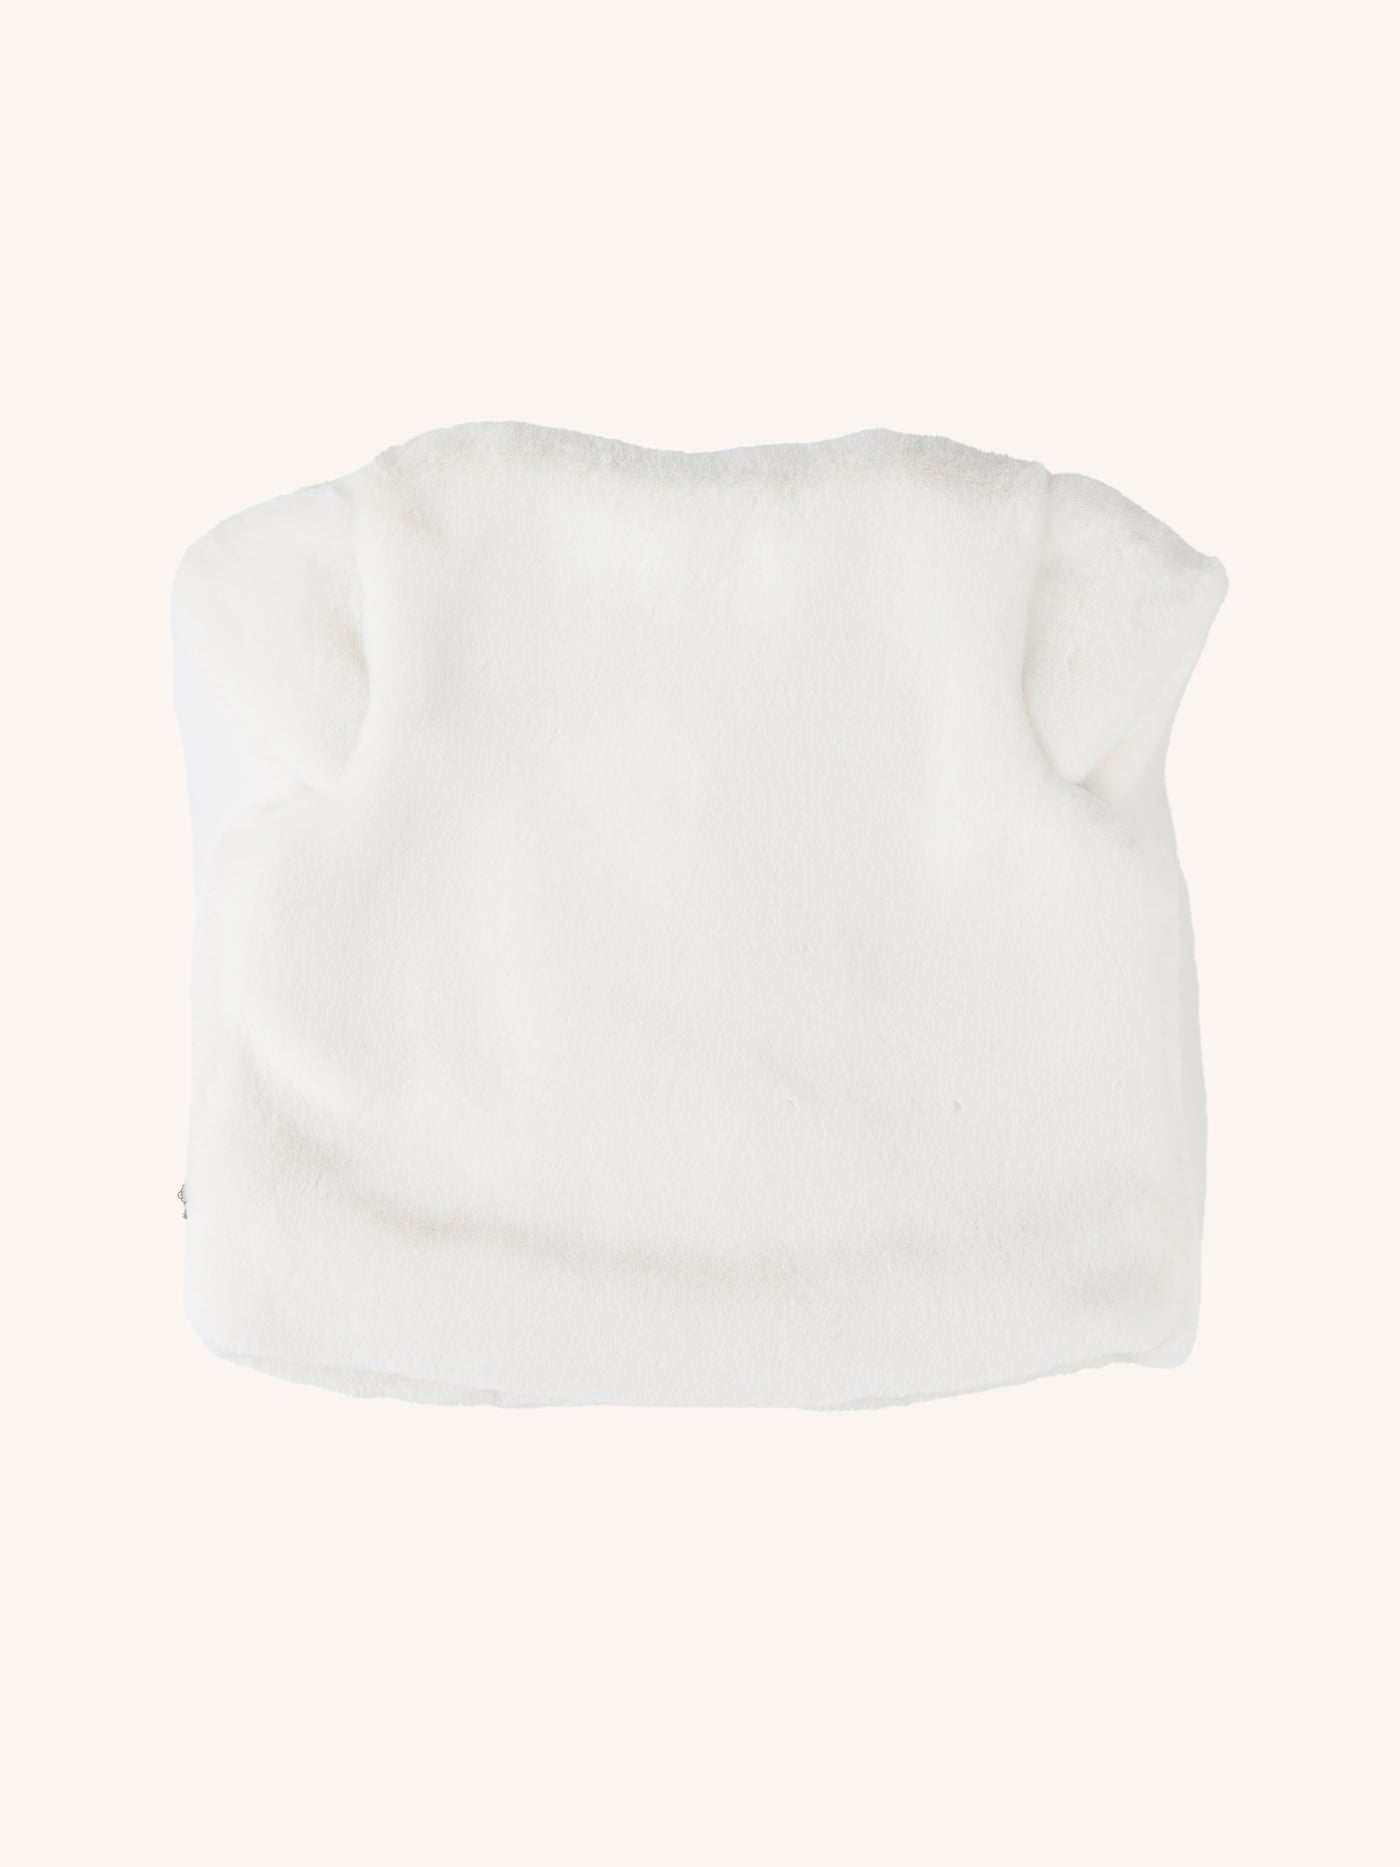 Snuggle Cap Sleeve Vest - Cream